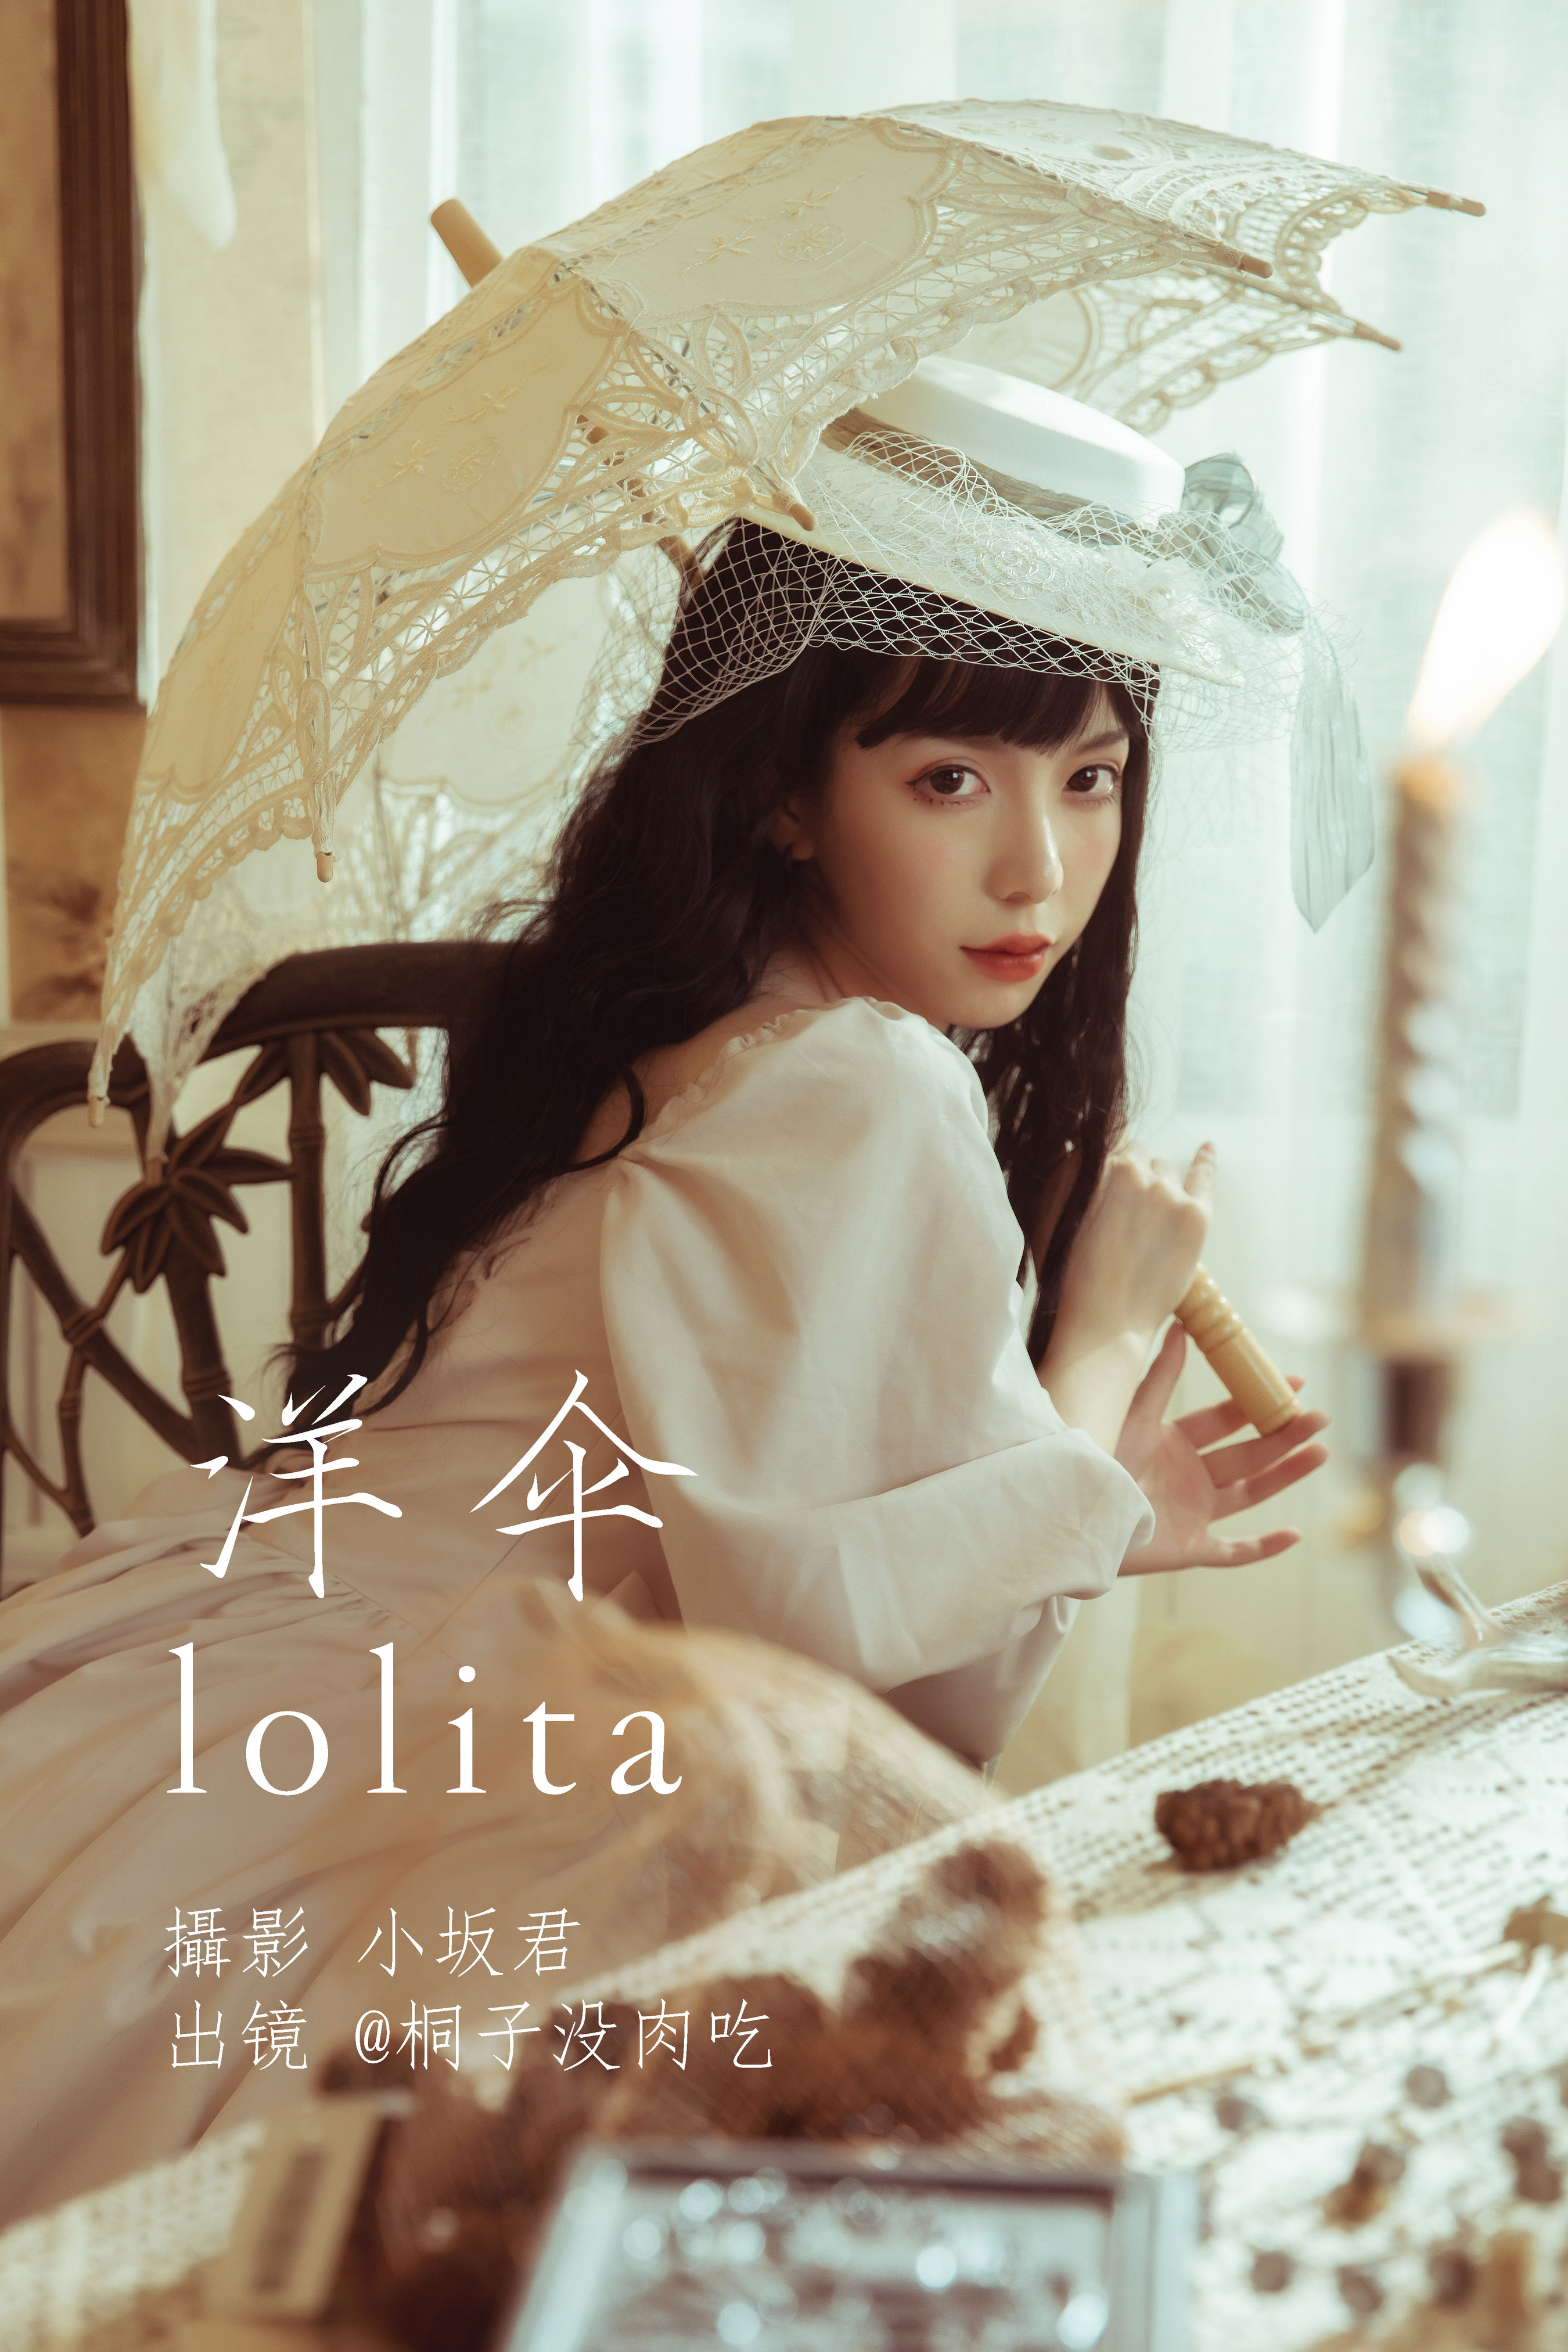 洋伞lolita 复古 美女 模特 惊艳 女神 漂亮 洛丽塔